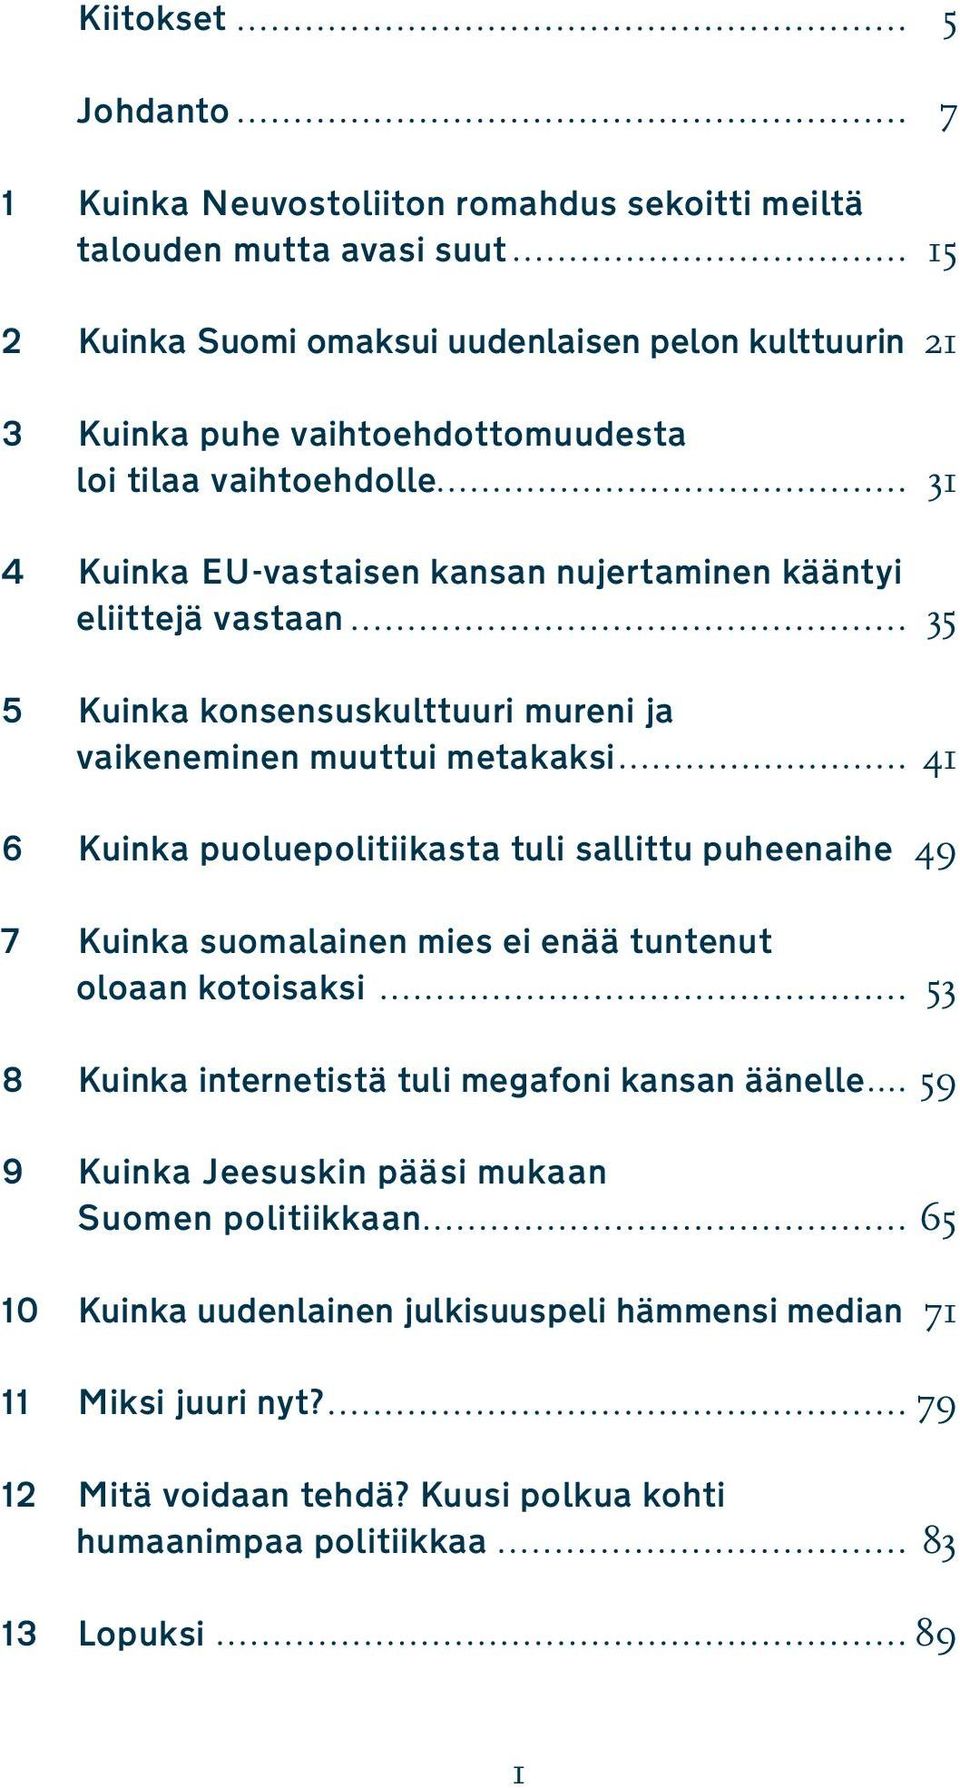 41 6 Kuinka puoluepolitiikasta tuli sallittu puheenaihe 49 7 Kuinka suomalainen mies ei enää tuntenut oloaan kotoisaksi 53 8 Kuinka internetistä tuli megafoni kansan äänelle 59 9 Kuinka